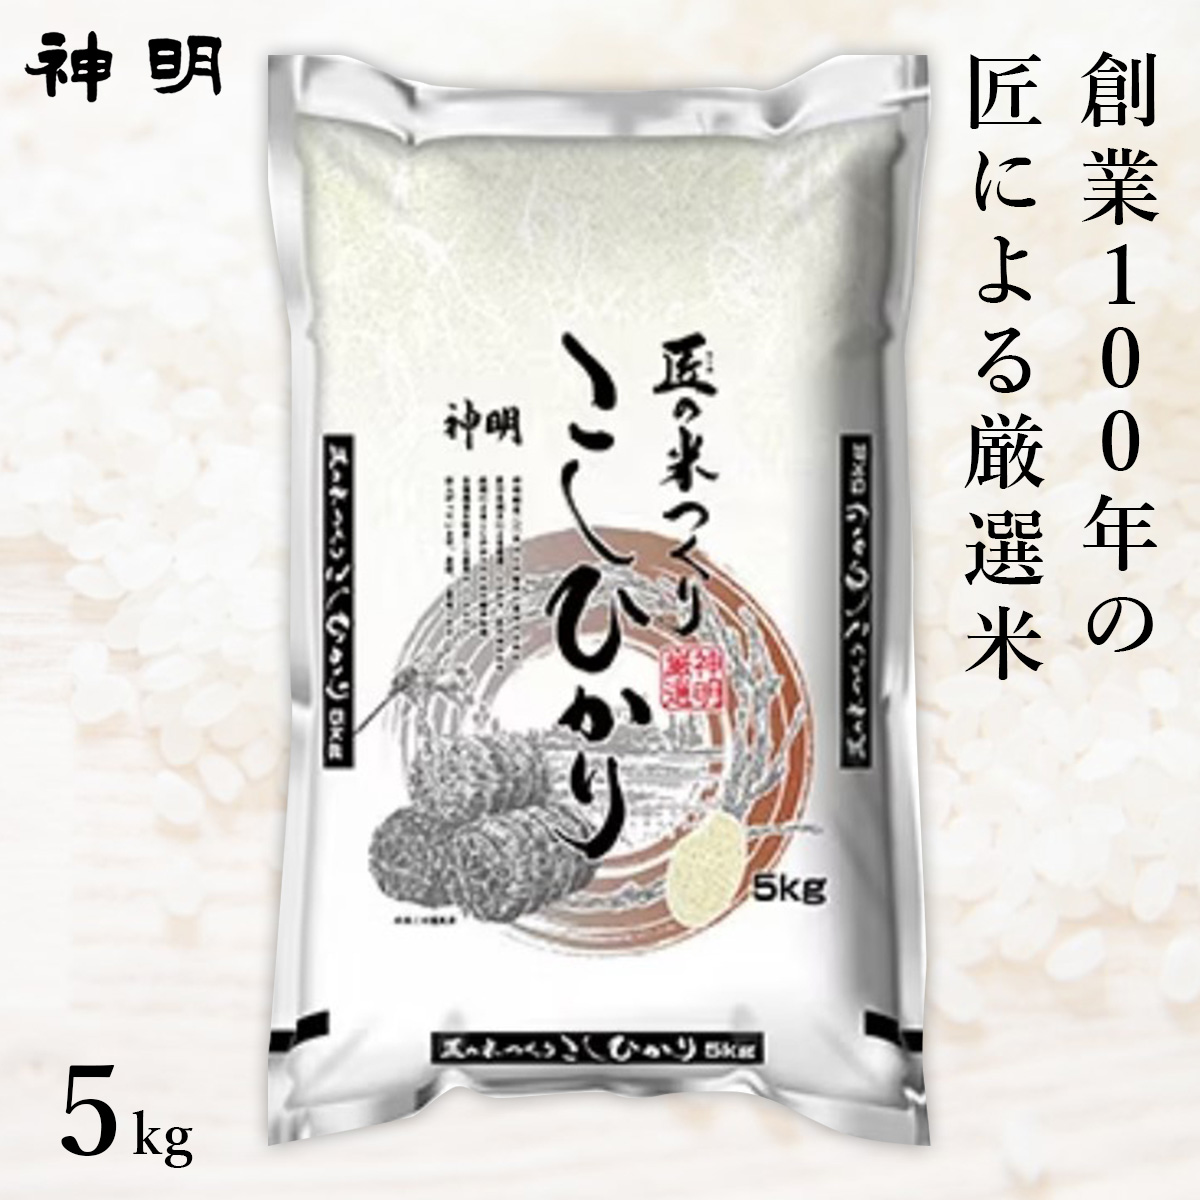 ○【最短当日出荷】 匠のお米 コシヒカリ 5kg(1袋) 精米仕立て 家計応援米